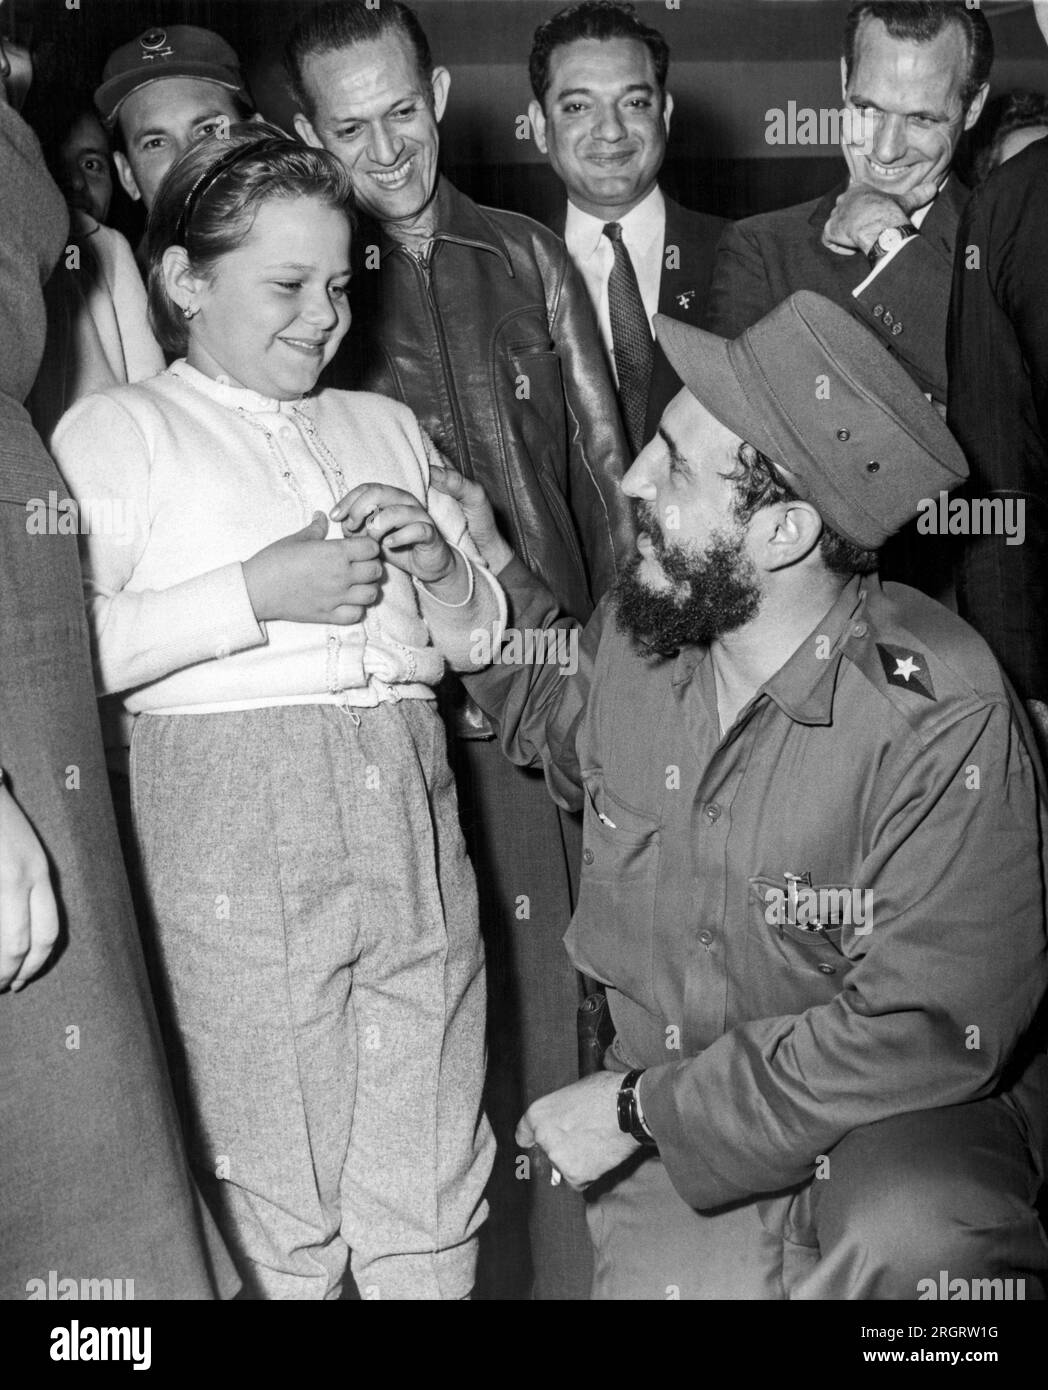 La Havane, Cuba : 17 janvier 1959. Le chef rebelle Fidel Castro discute avec un jeune admirateur lors d'une conférence de presse. Banque D'Images